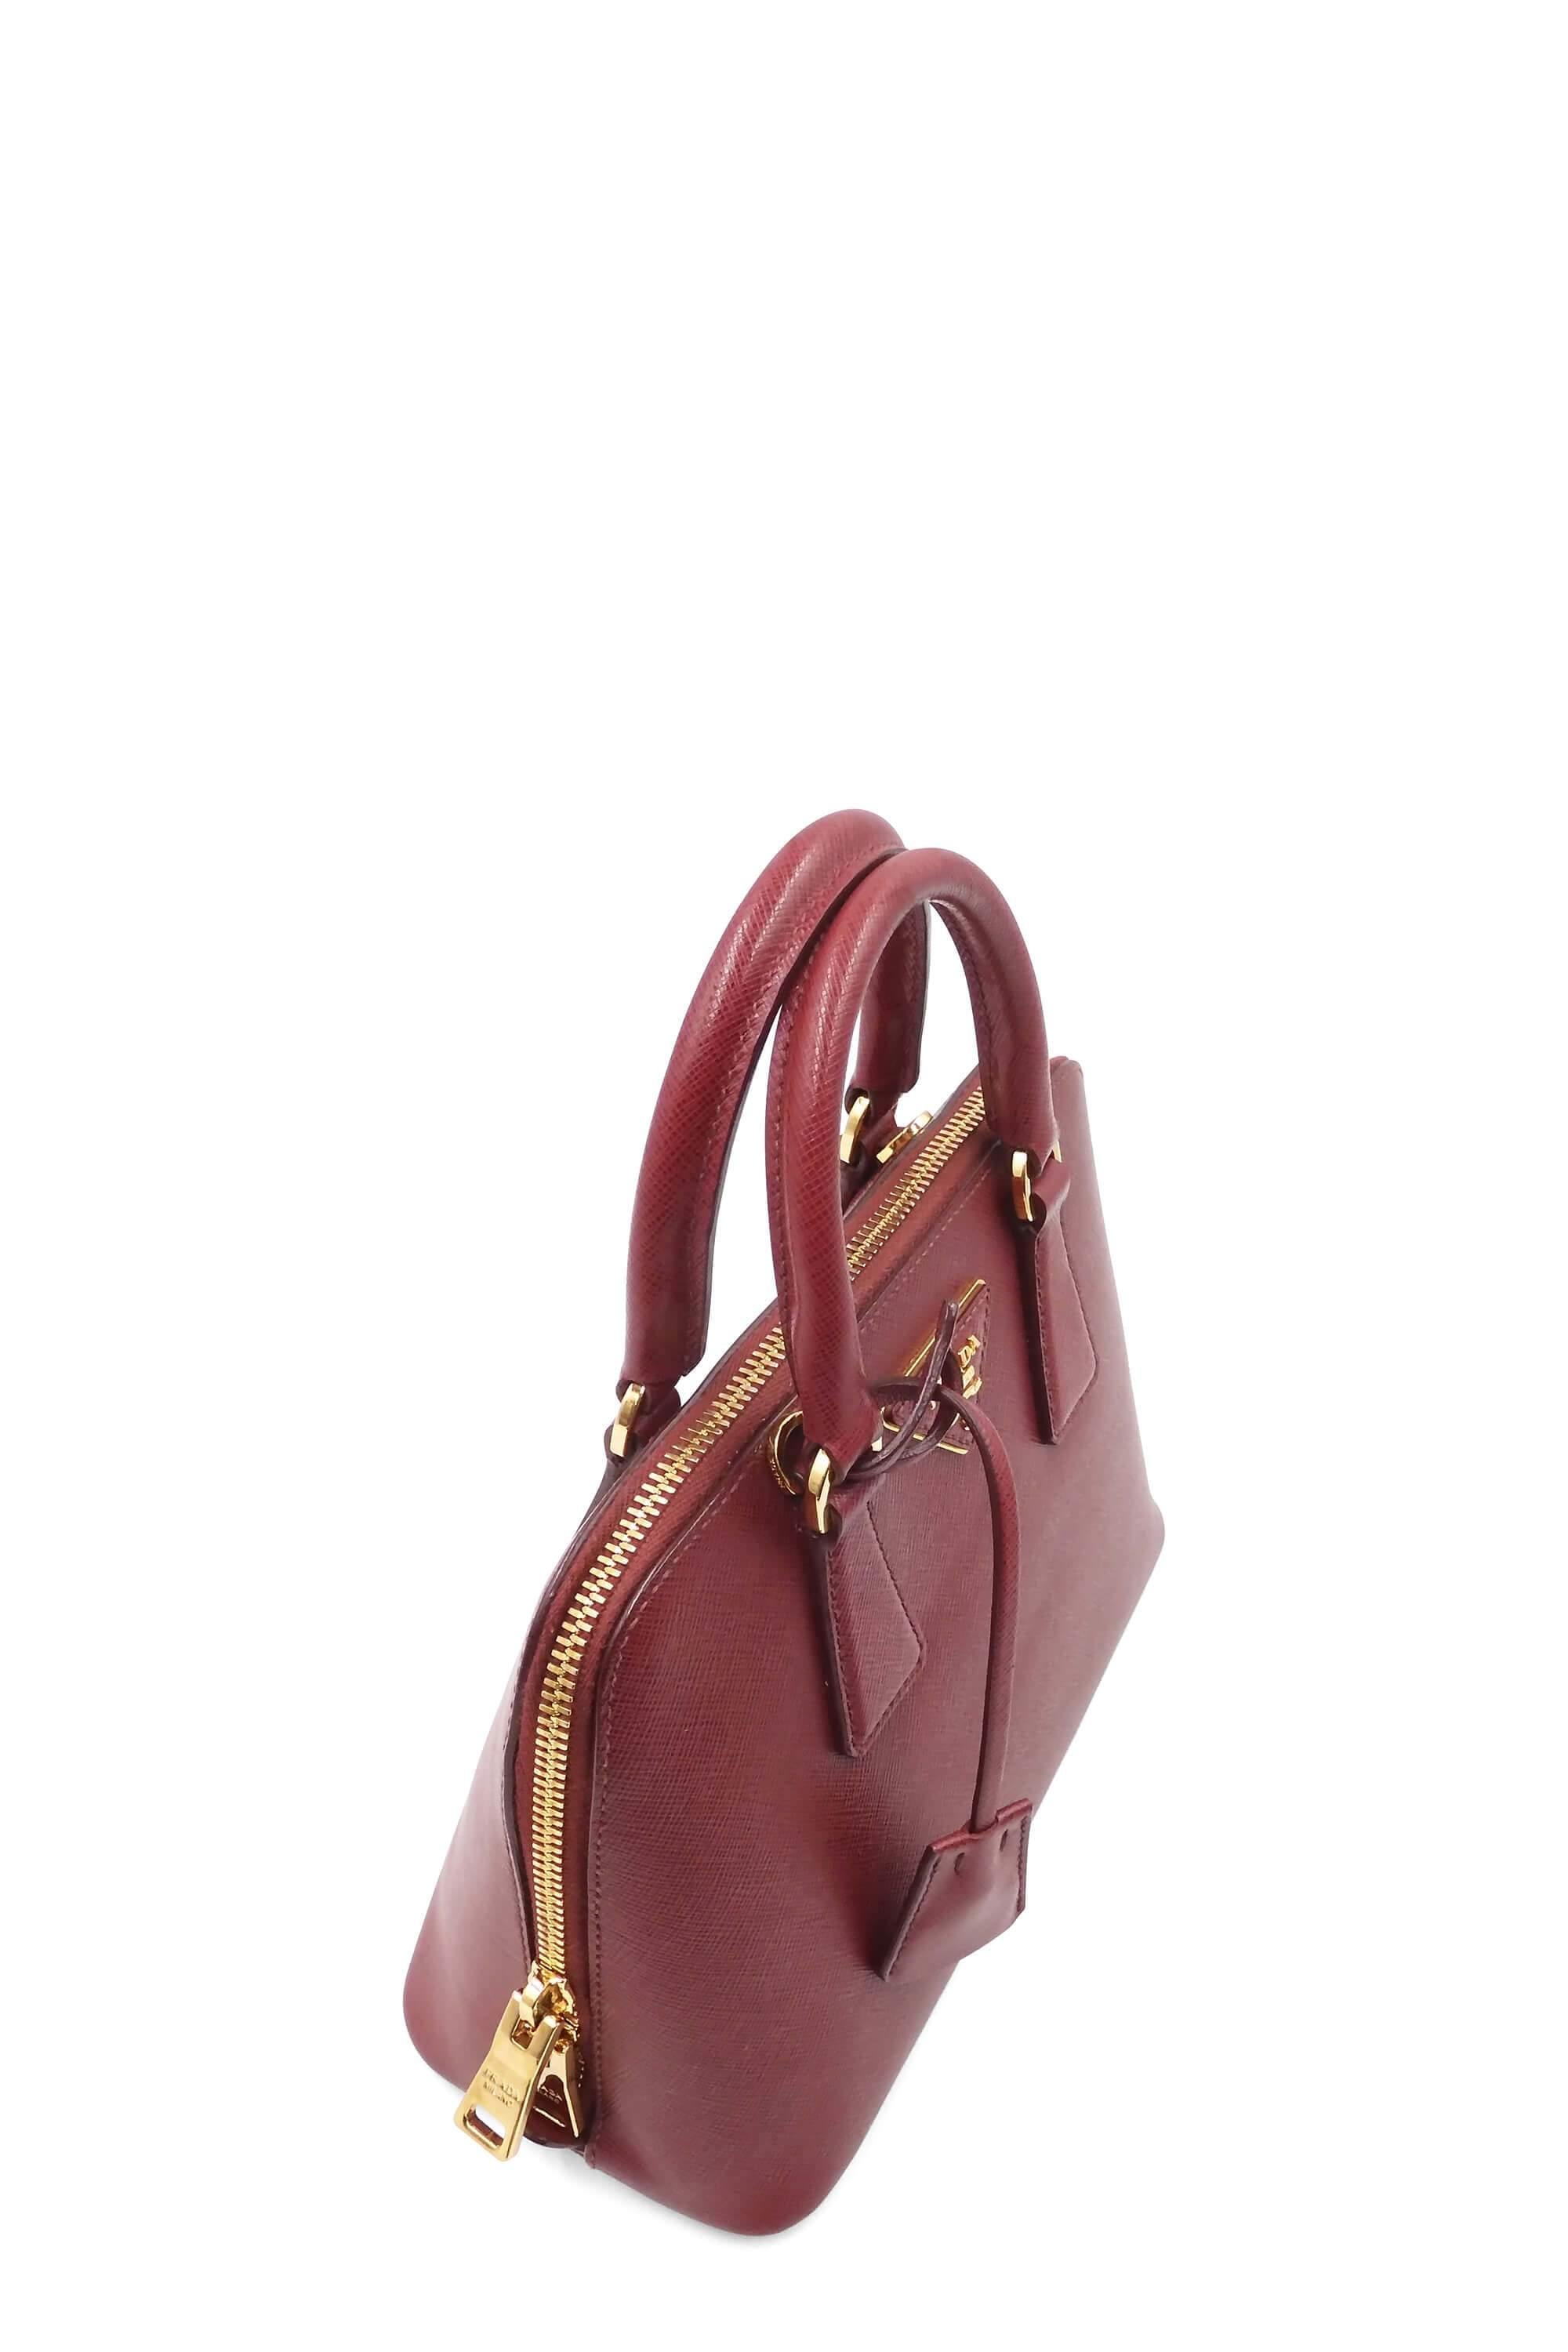 $3000+ Excellent Condition Prada Small Promenade Silver Saffiano Leather Bag!!!